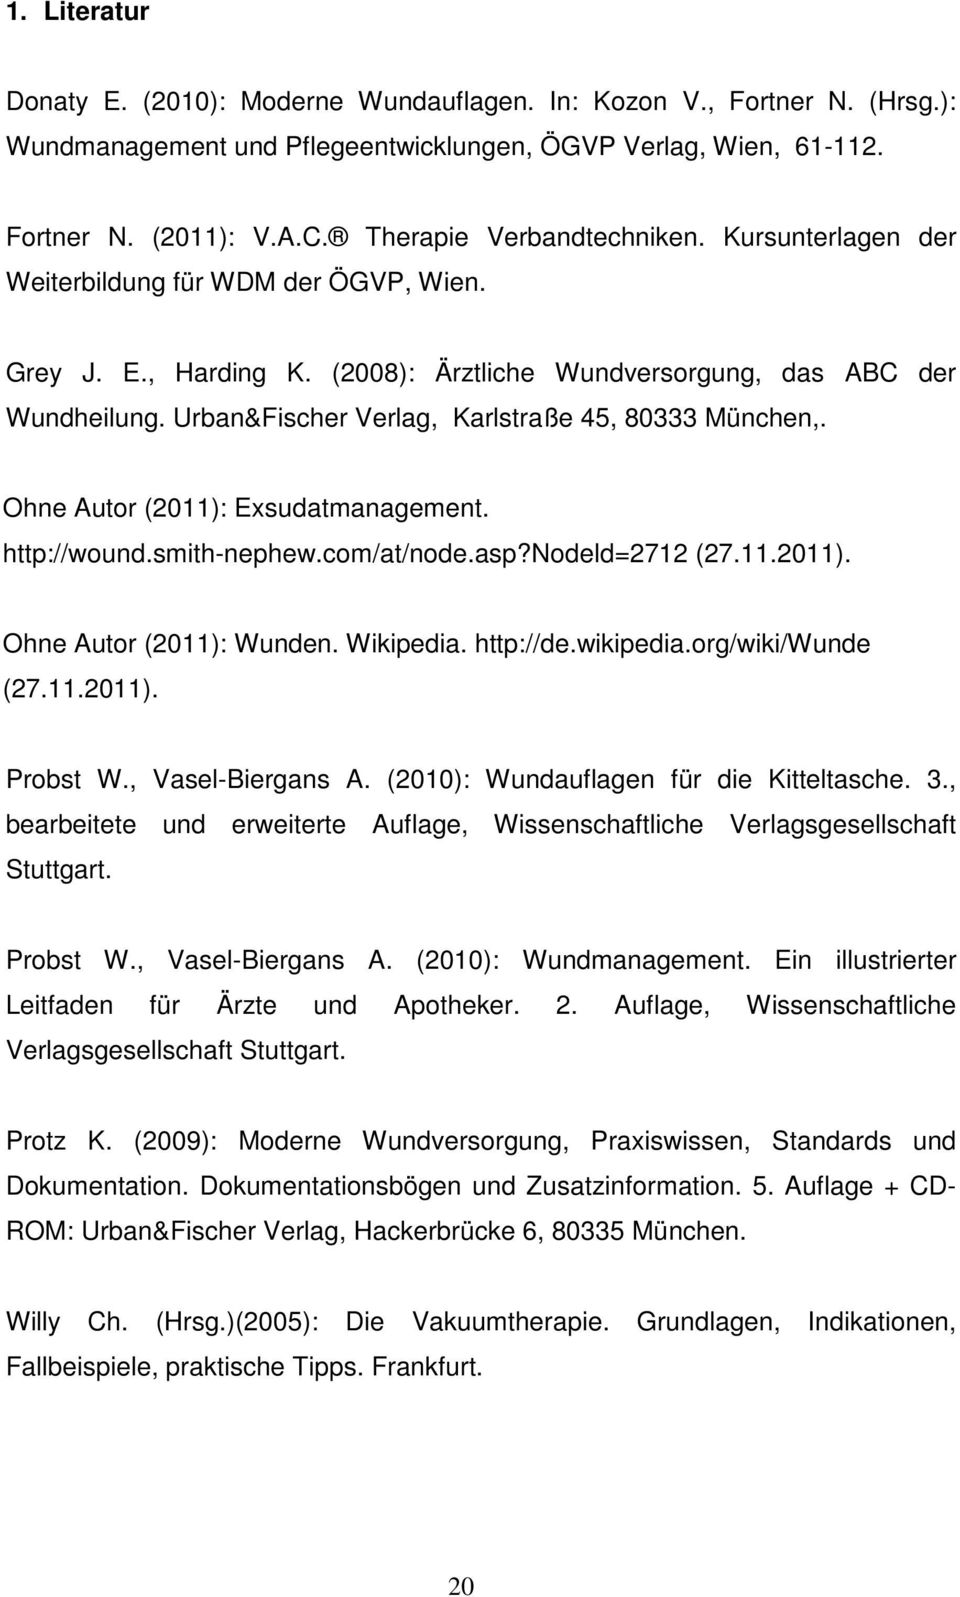 Urban&Fischer Verlag, Karlstraße 45, 80333 München,. Ohne Autor (2011): Exsudatmanagement. http://wound.smith-nephew.com/at/node.asp?nodeld=2712 (27.11.2011). Ohne Autor (2011): Wunden. Wikipedia.